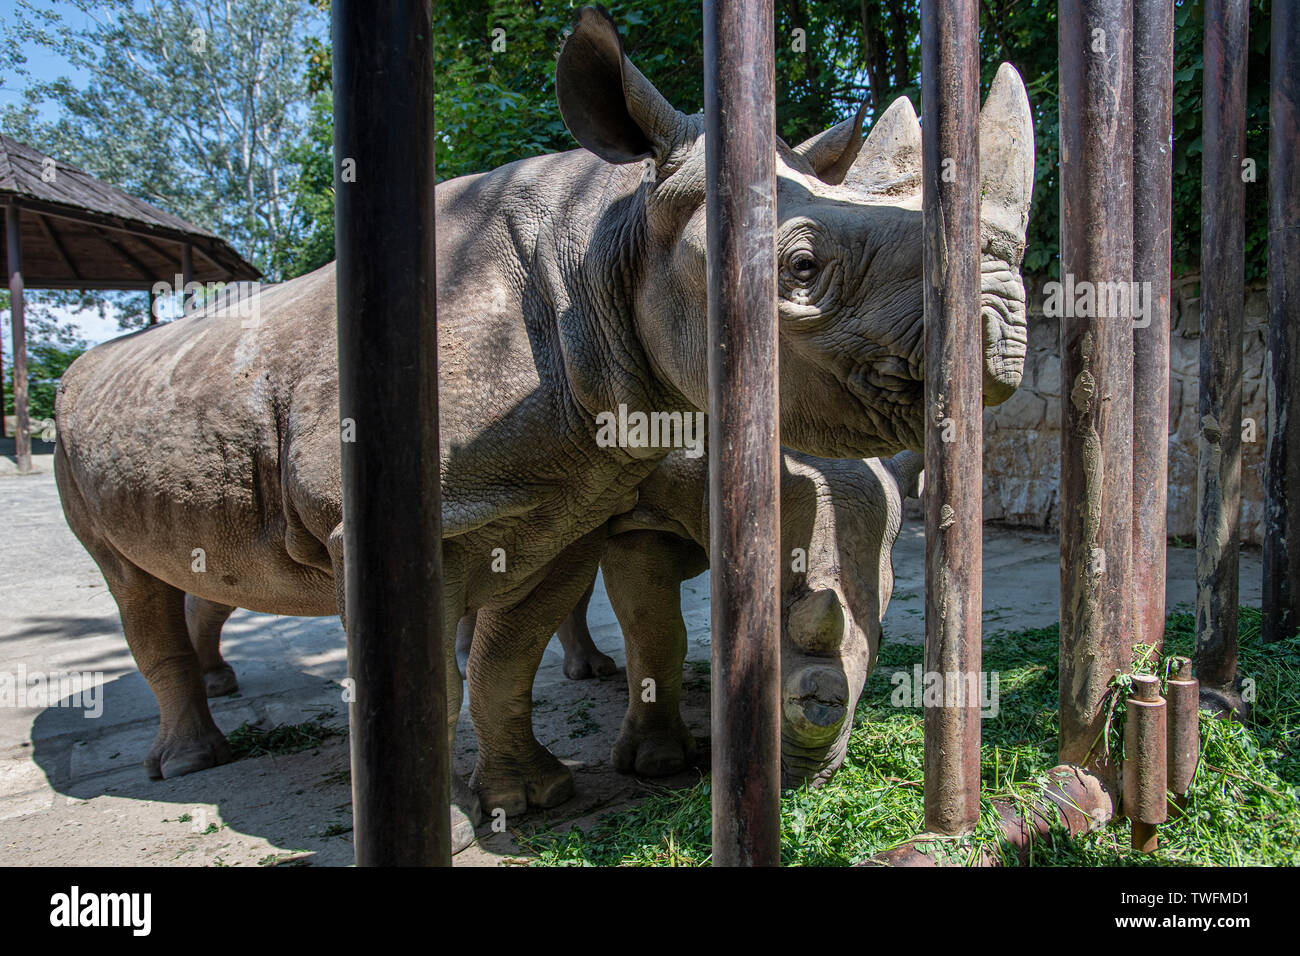 El zoo Dvur Kralove en República Checa ha enviado cuatro rinocerontes negros de vuelta a su patria en África en Rwanda. Rinocerontes negros en el parque zoológico de Dvur Kralove (República Checa), 20 de junio de 2019. (CTK Foto/David Tanecek) Foto de stock